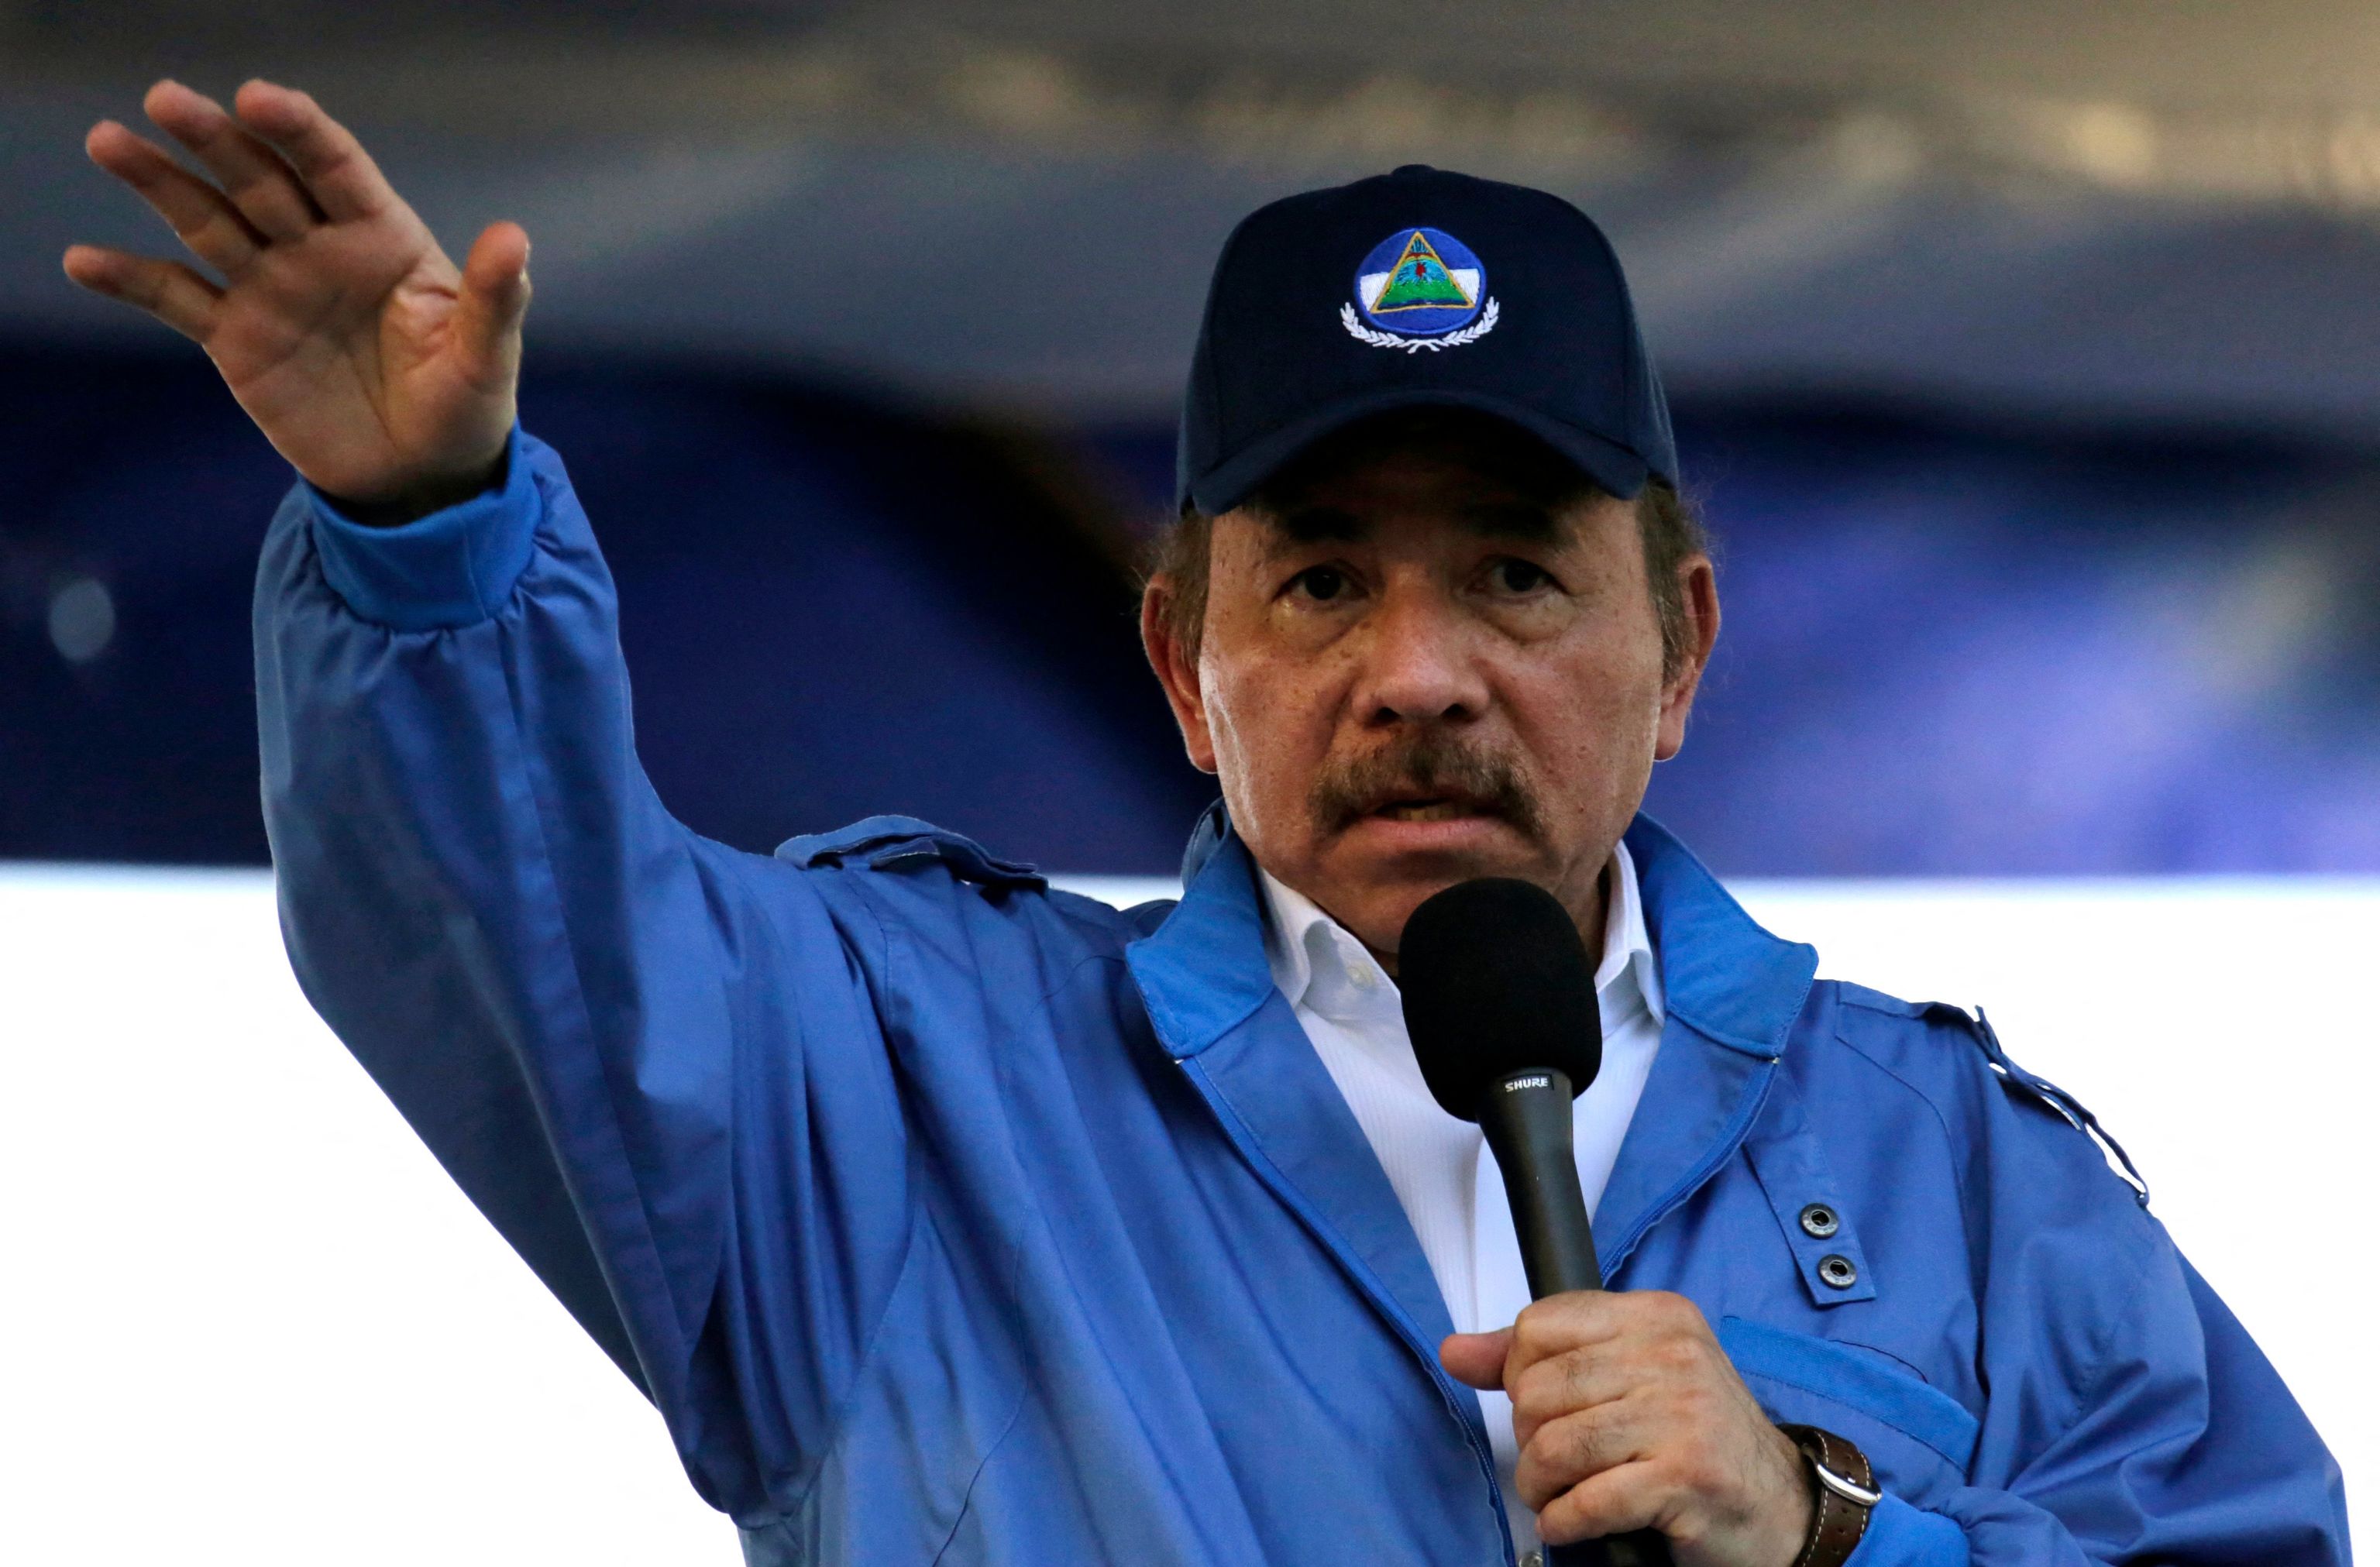 Ortega dirigía más de mil cuentas falsas de Facebook para crear desinformación imagen